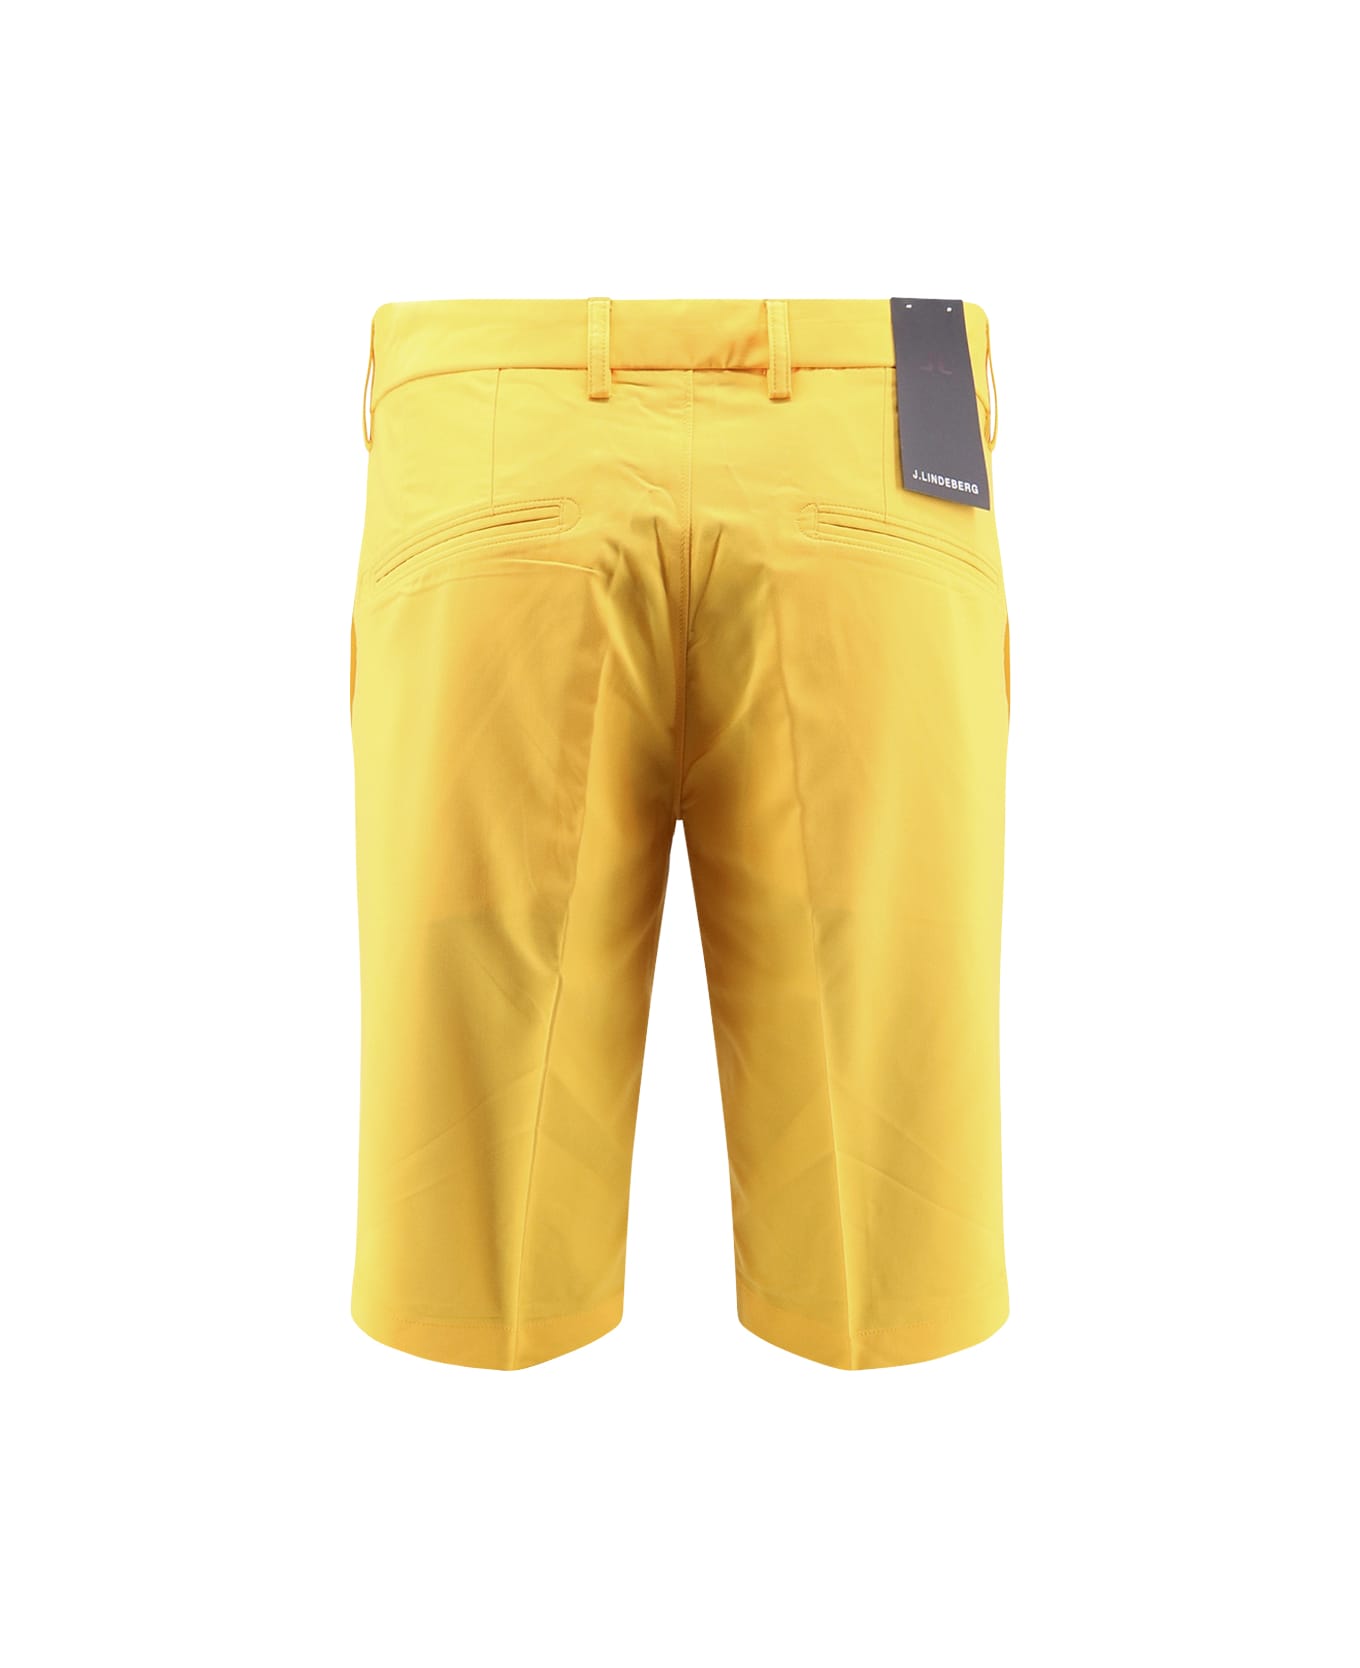 J.Lindeberg Bermuda Shorts - Yellow